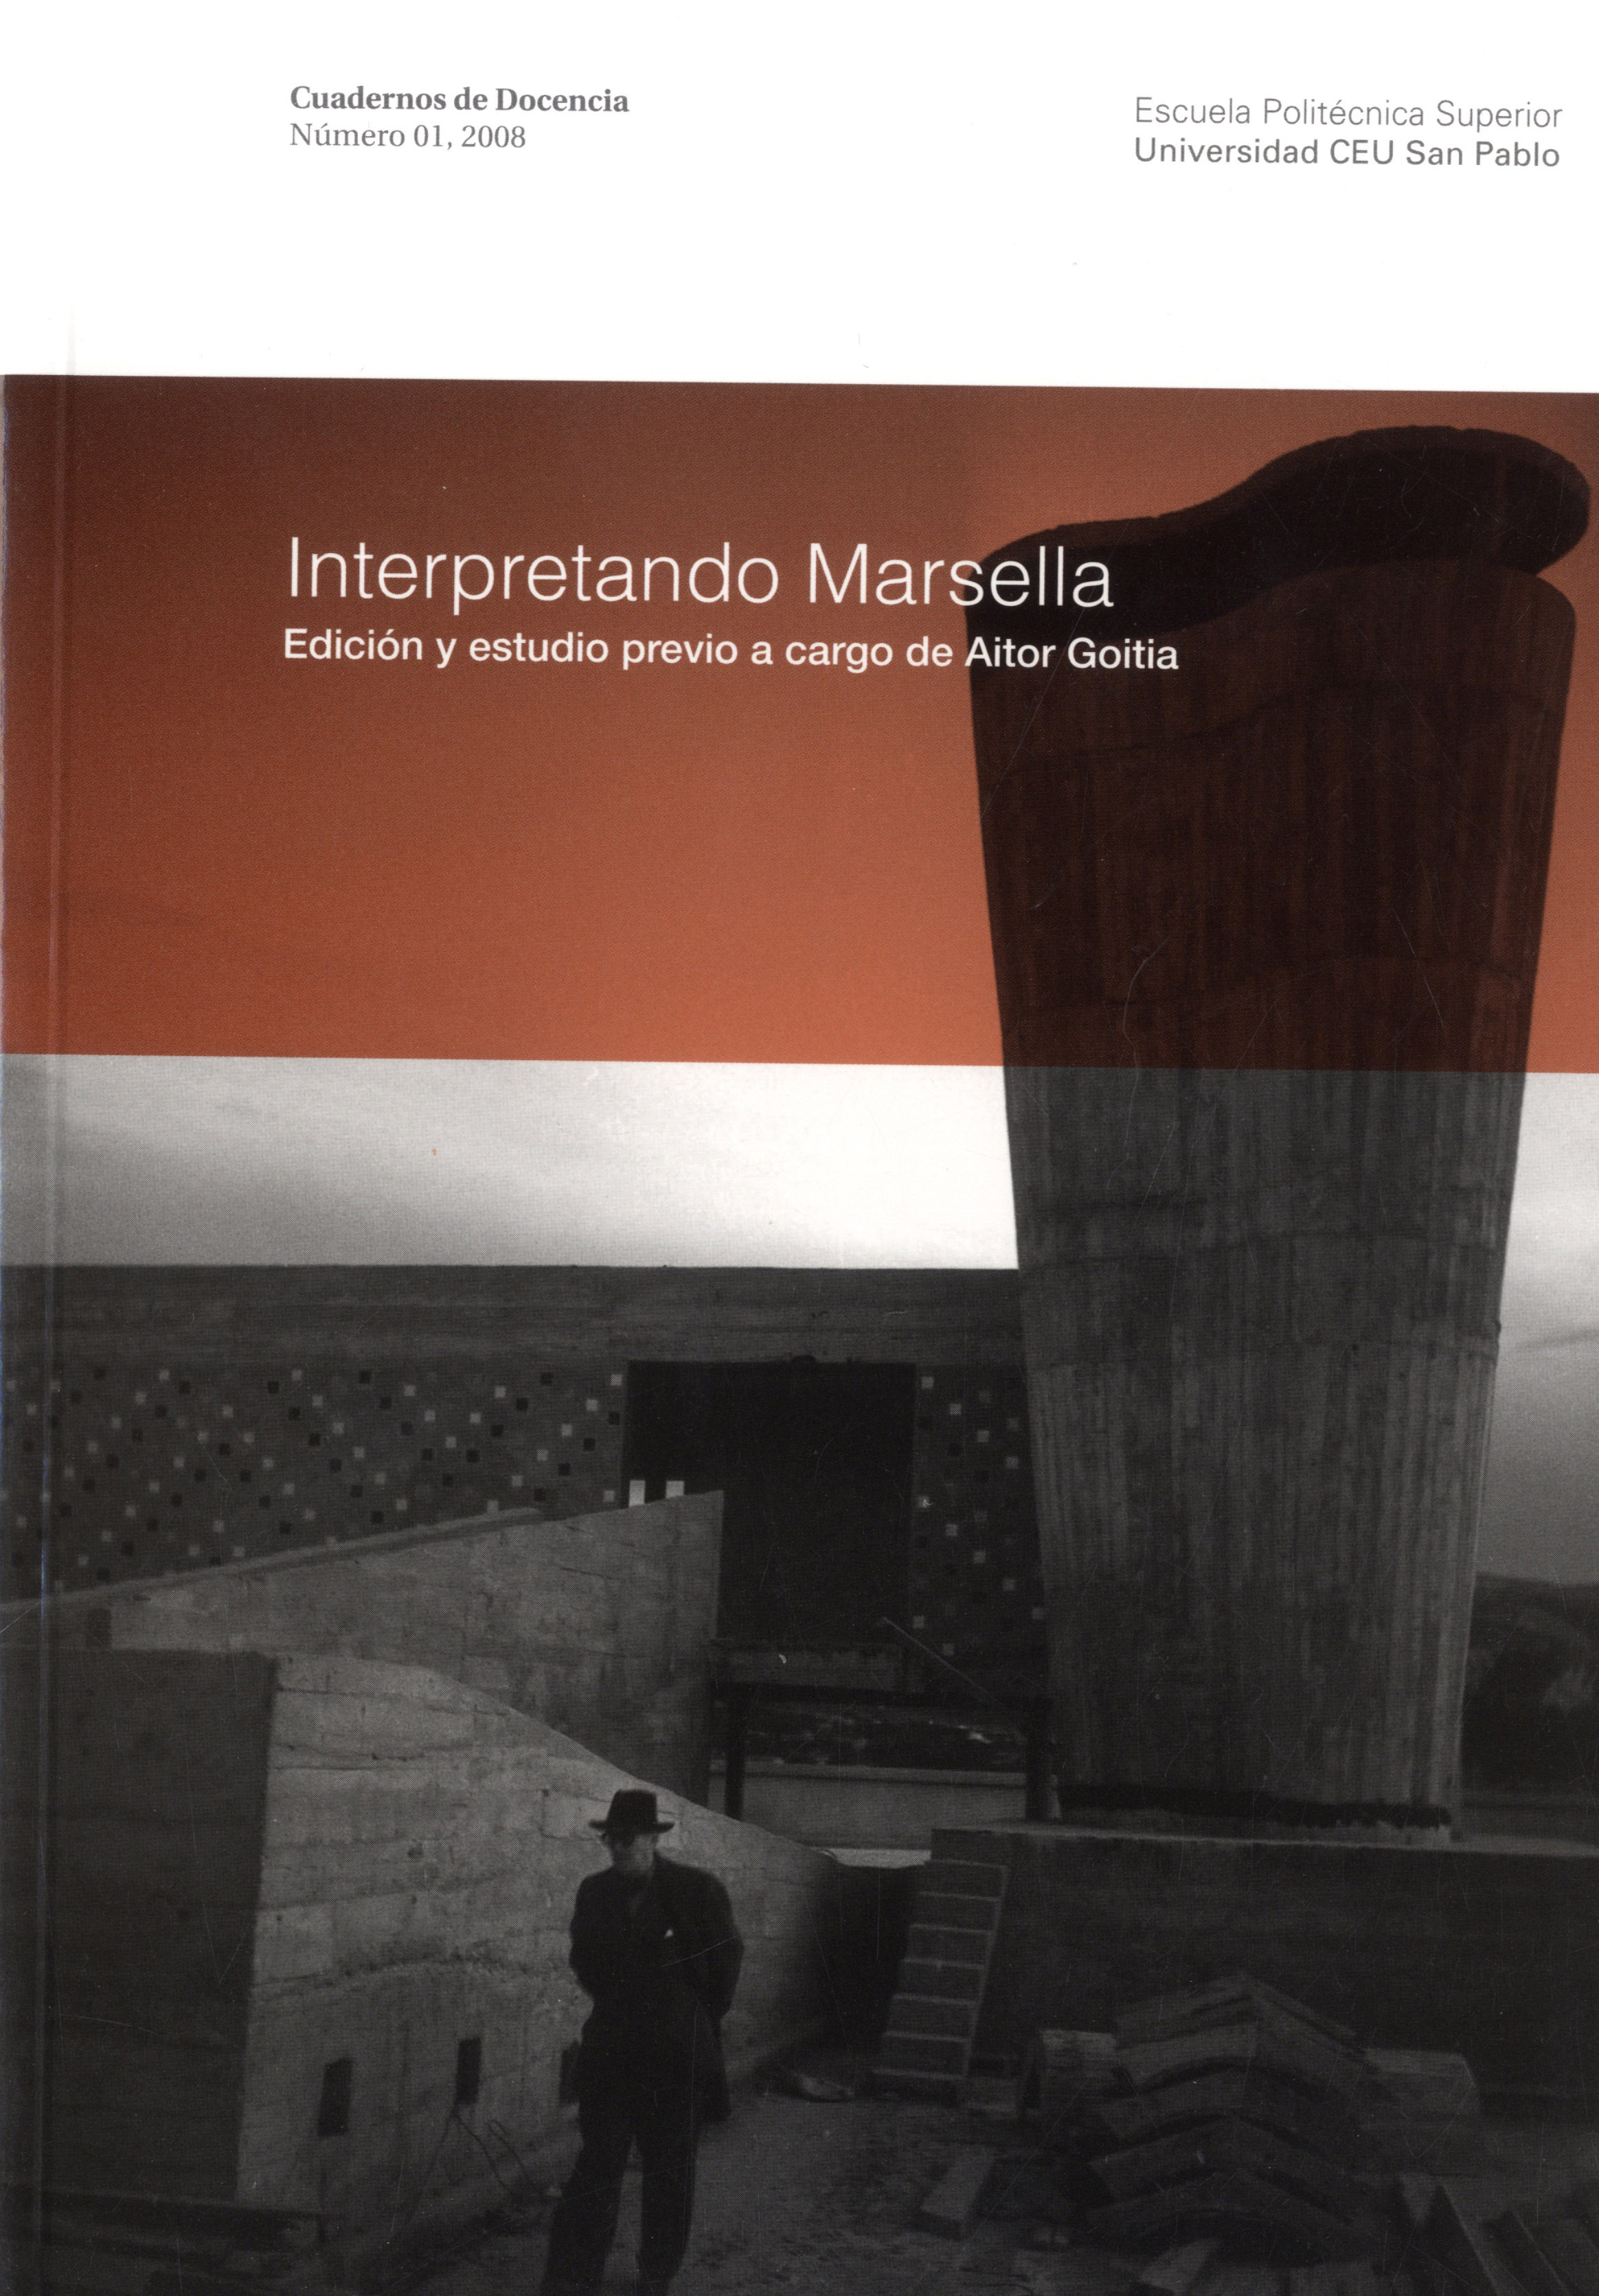 Cuaderno de Docencia: Interpretando Marsella